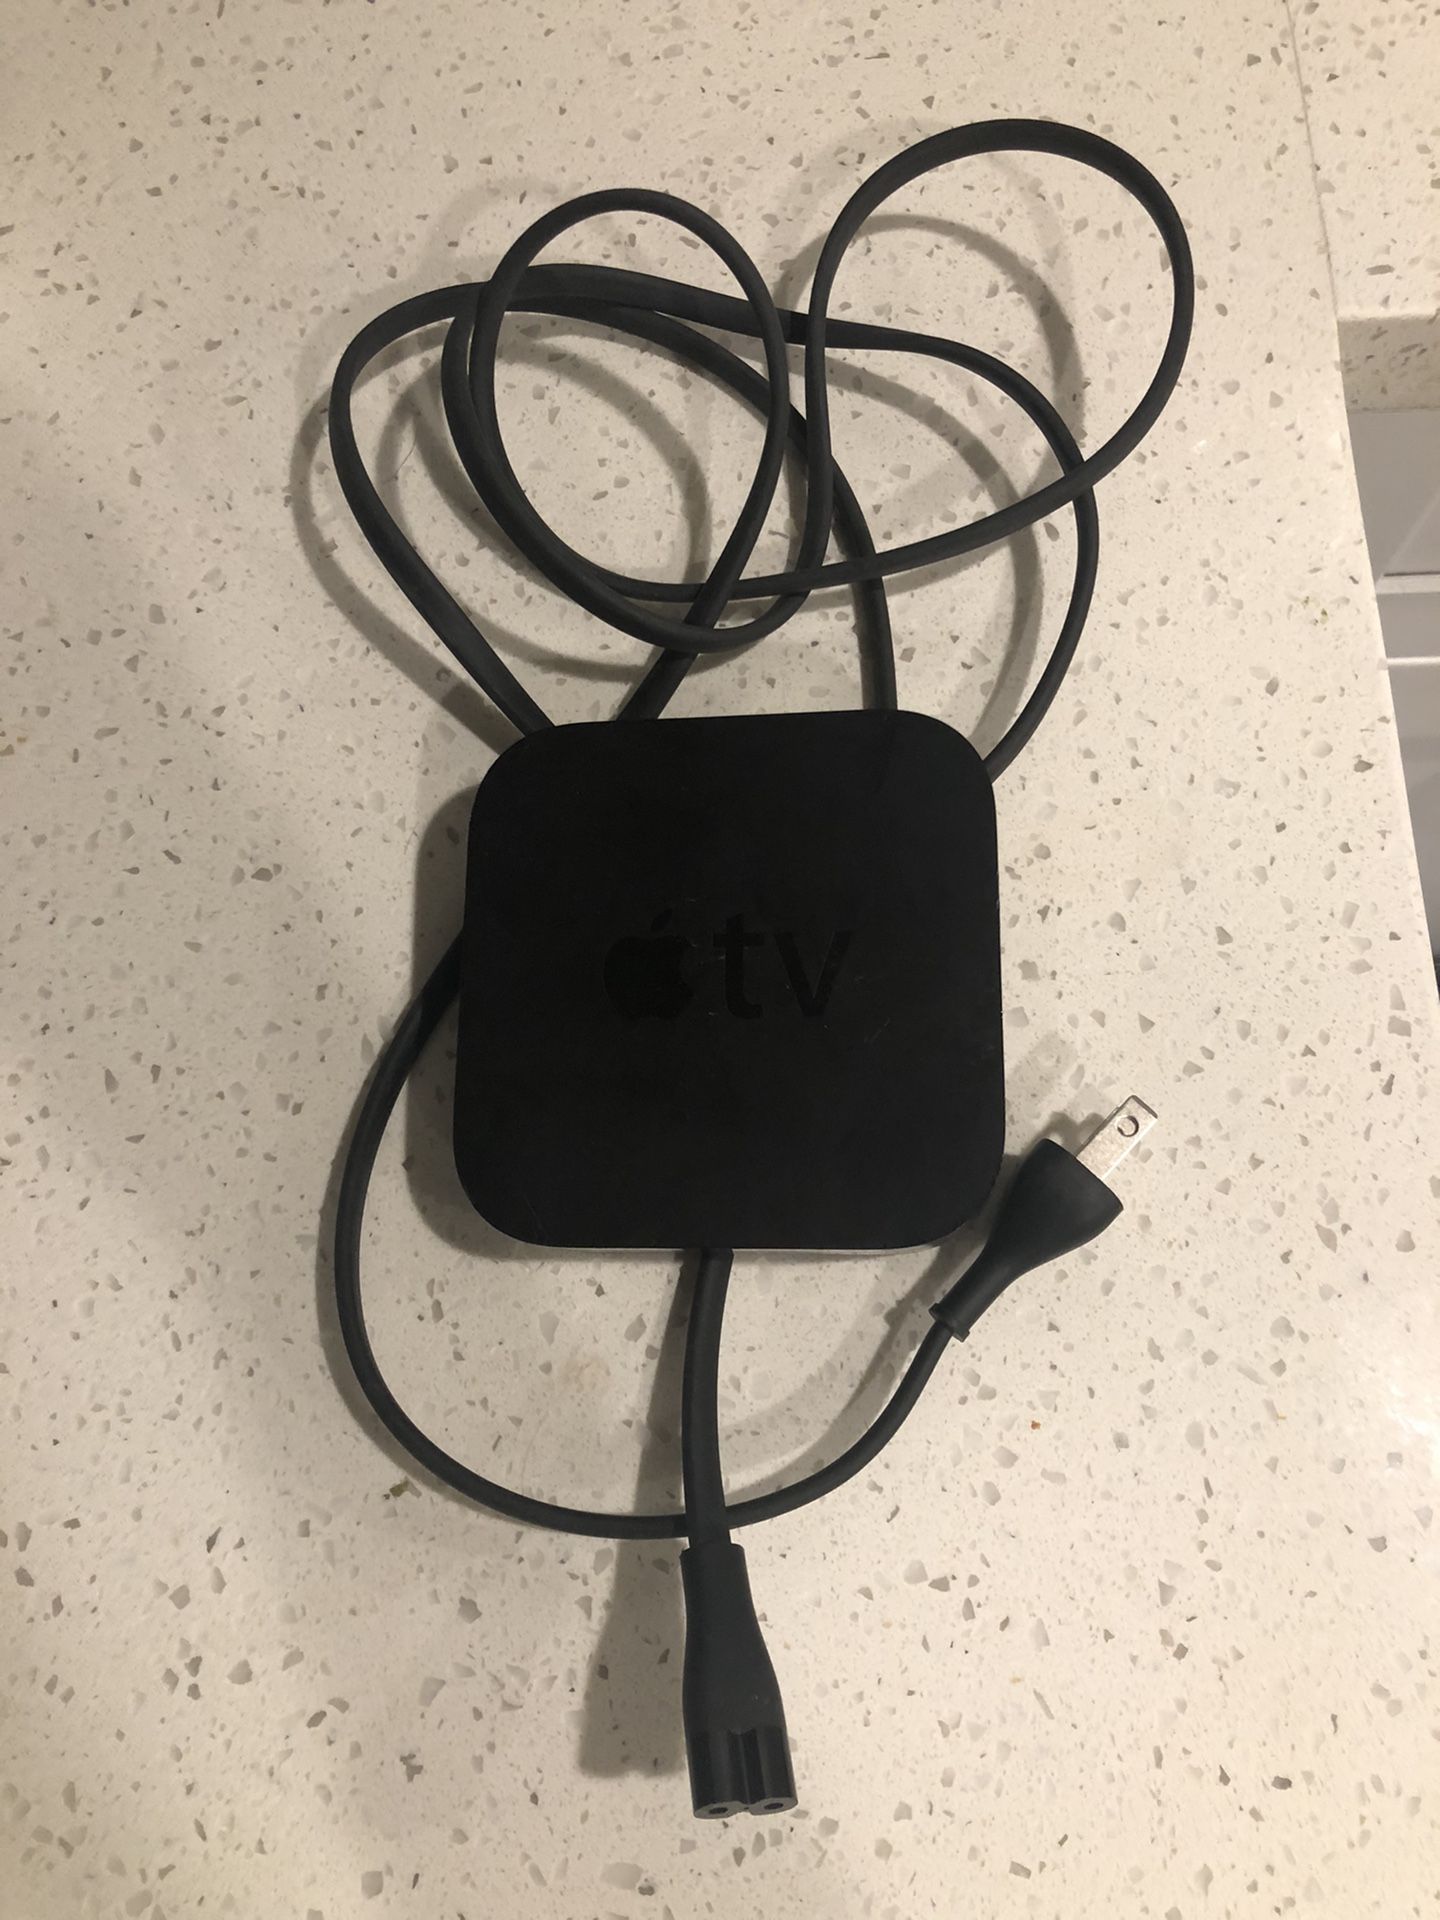 Apple TV no remote